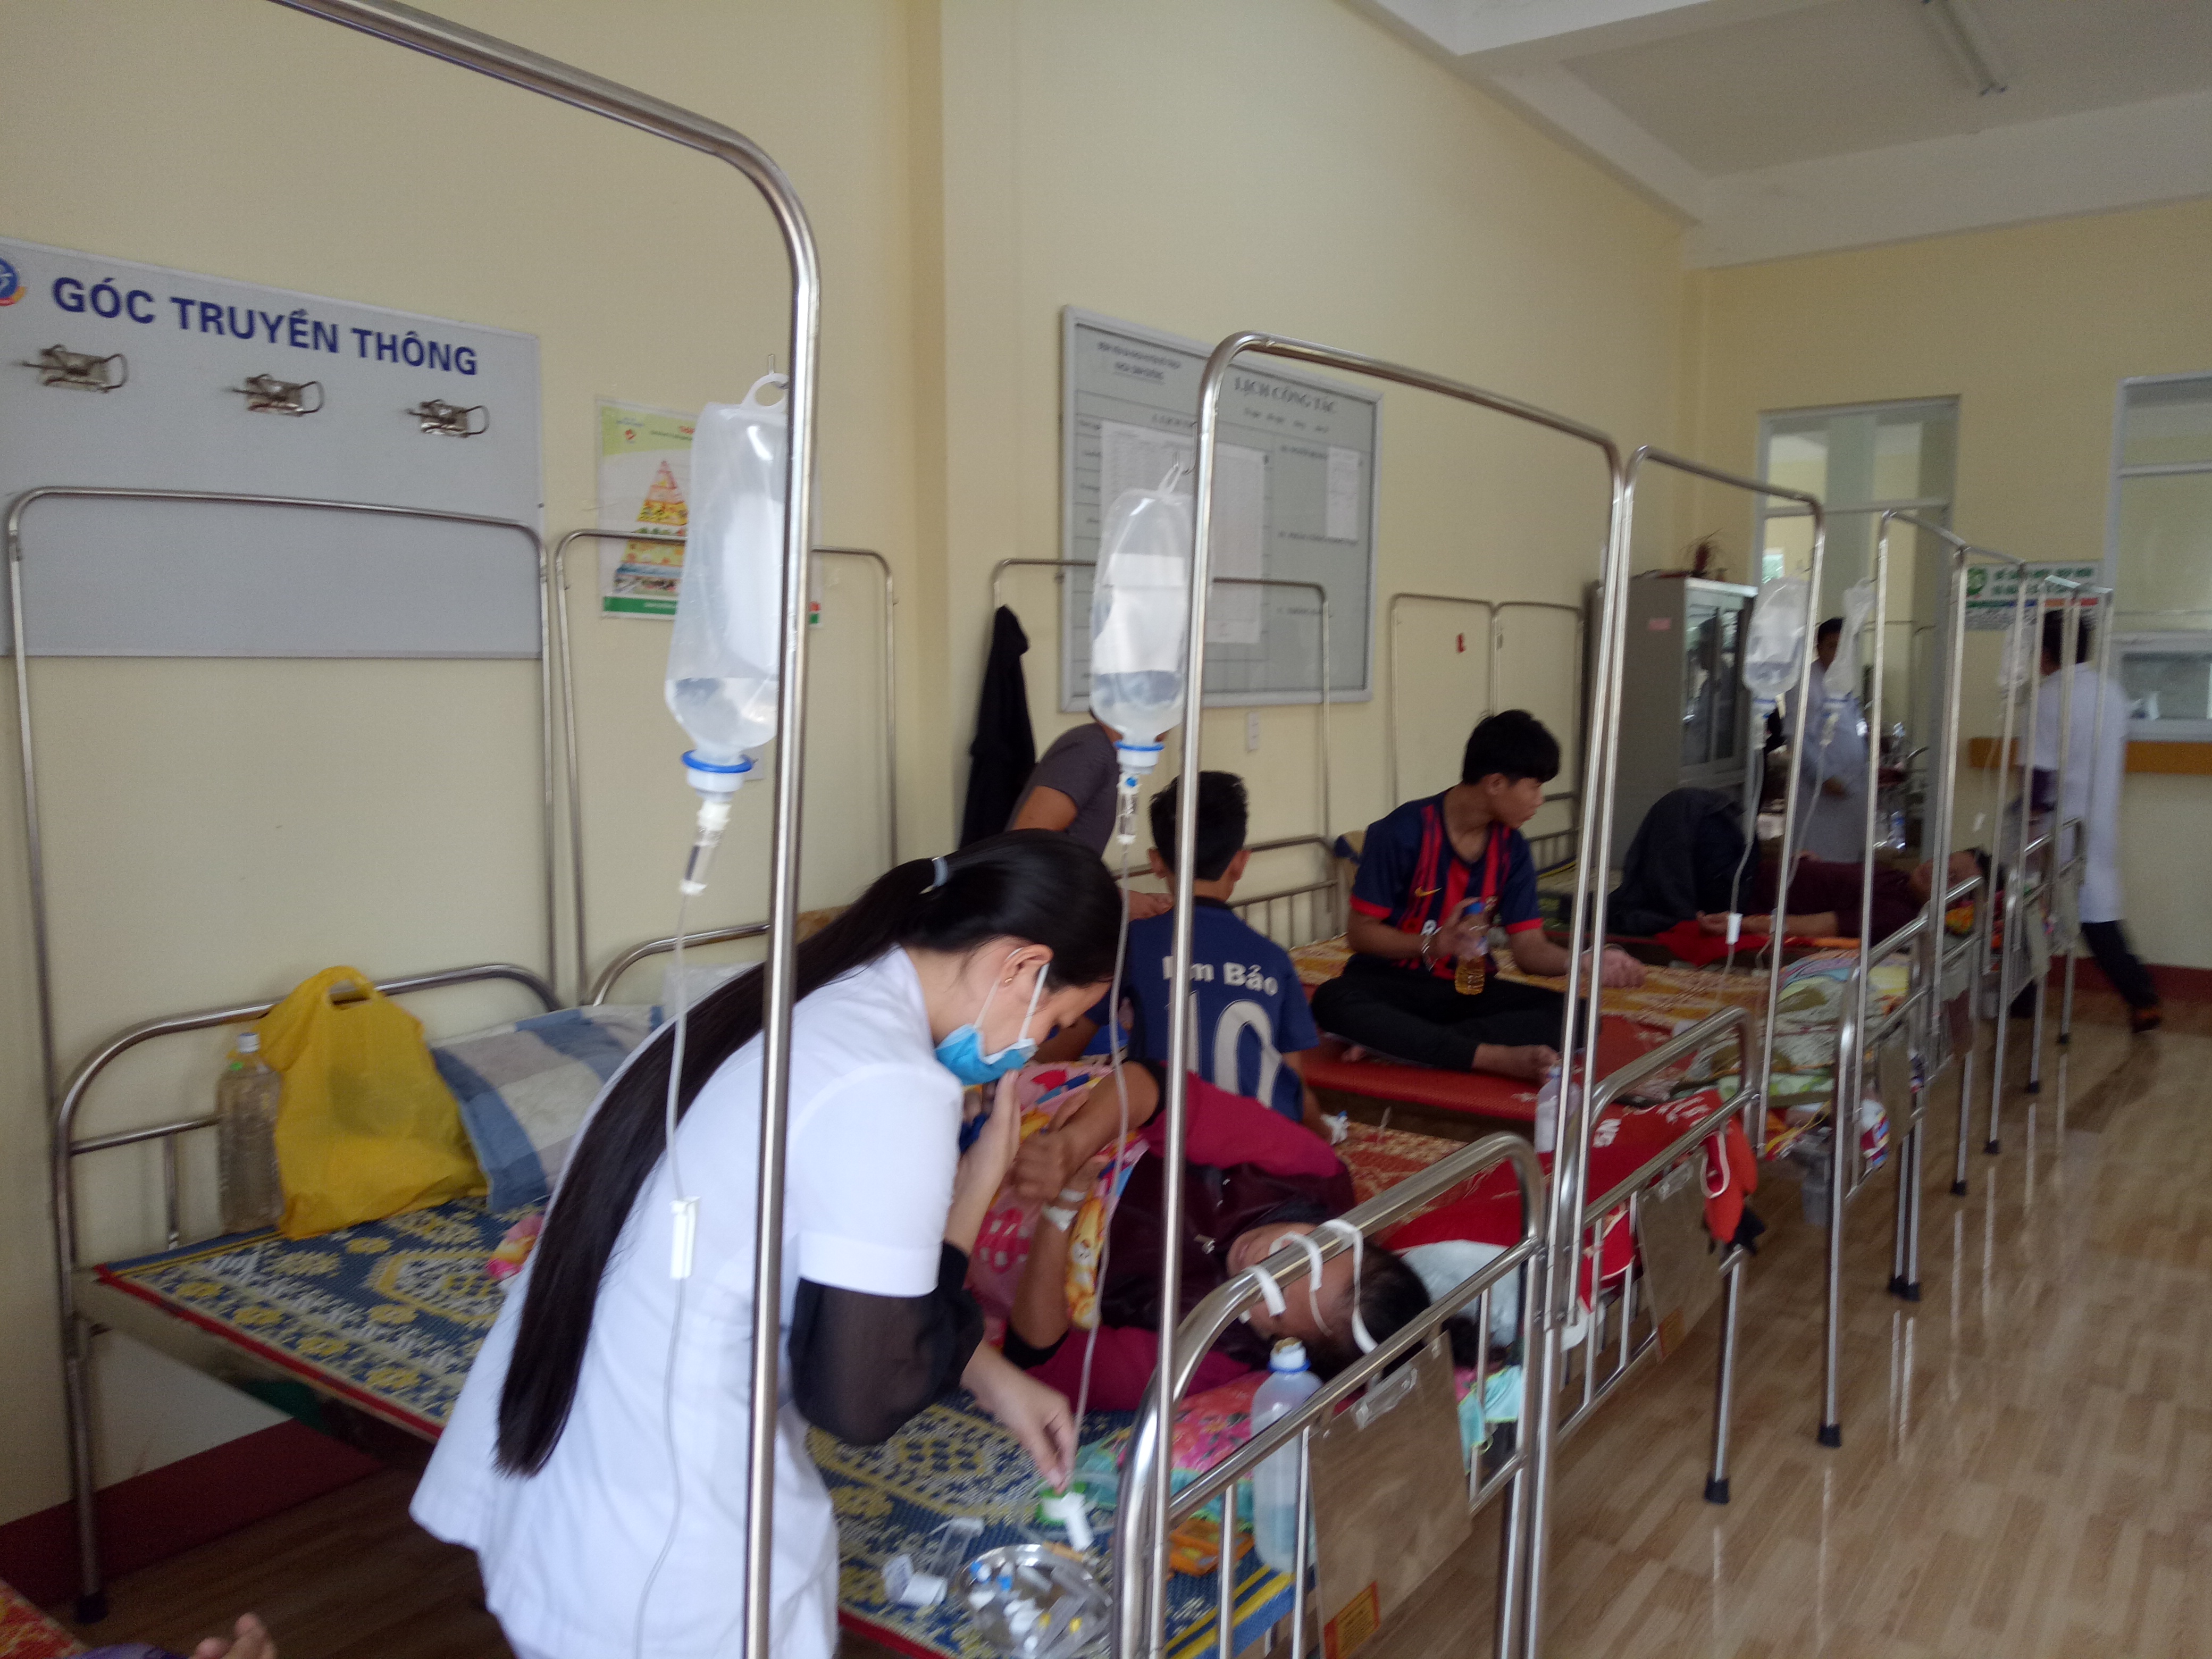     Các bệnh viện đa khoa tuyến huyện luôn nỗ lực làm tốt công tác chăm sóc sức khỏe nhân dân.